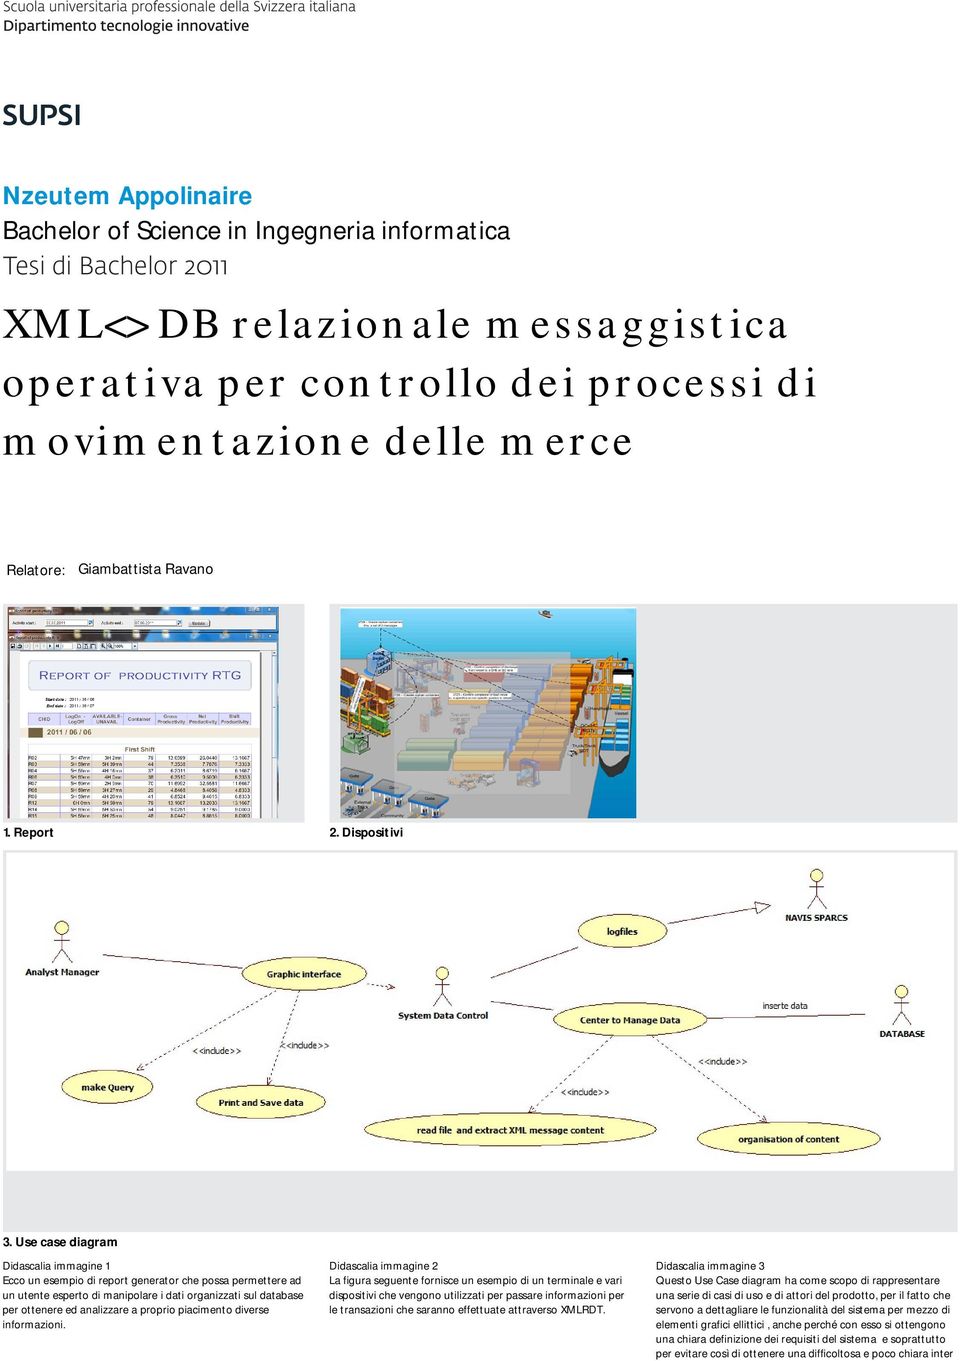 Use case diagram Didascalia immagine 1 Ecco un esempio di report generator che possa permettere ad un utente esperto di manipolare i dati organizzati sul database per ottenere ed analizzare a proprio